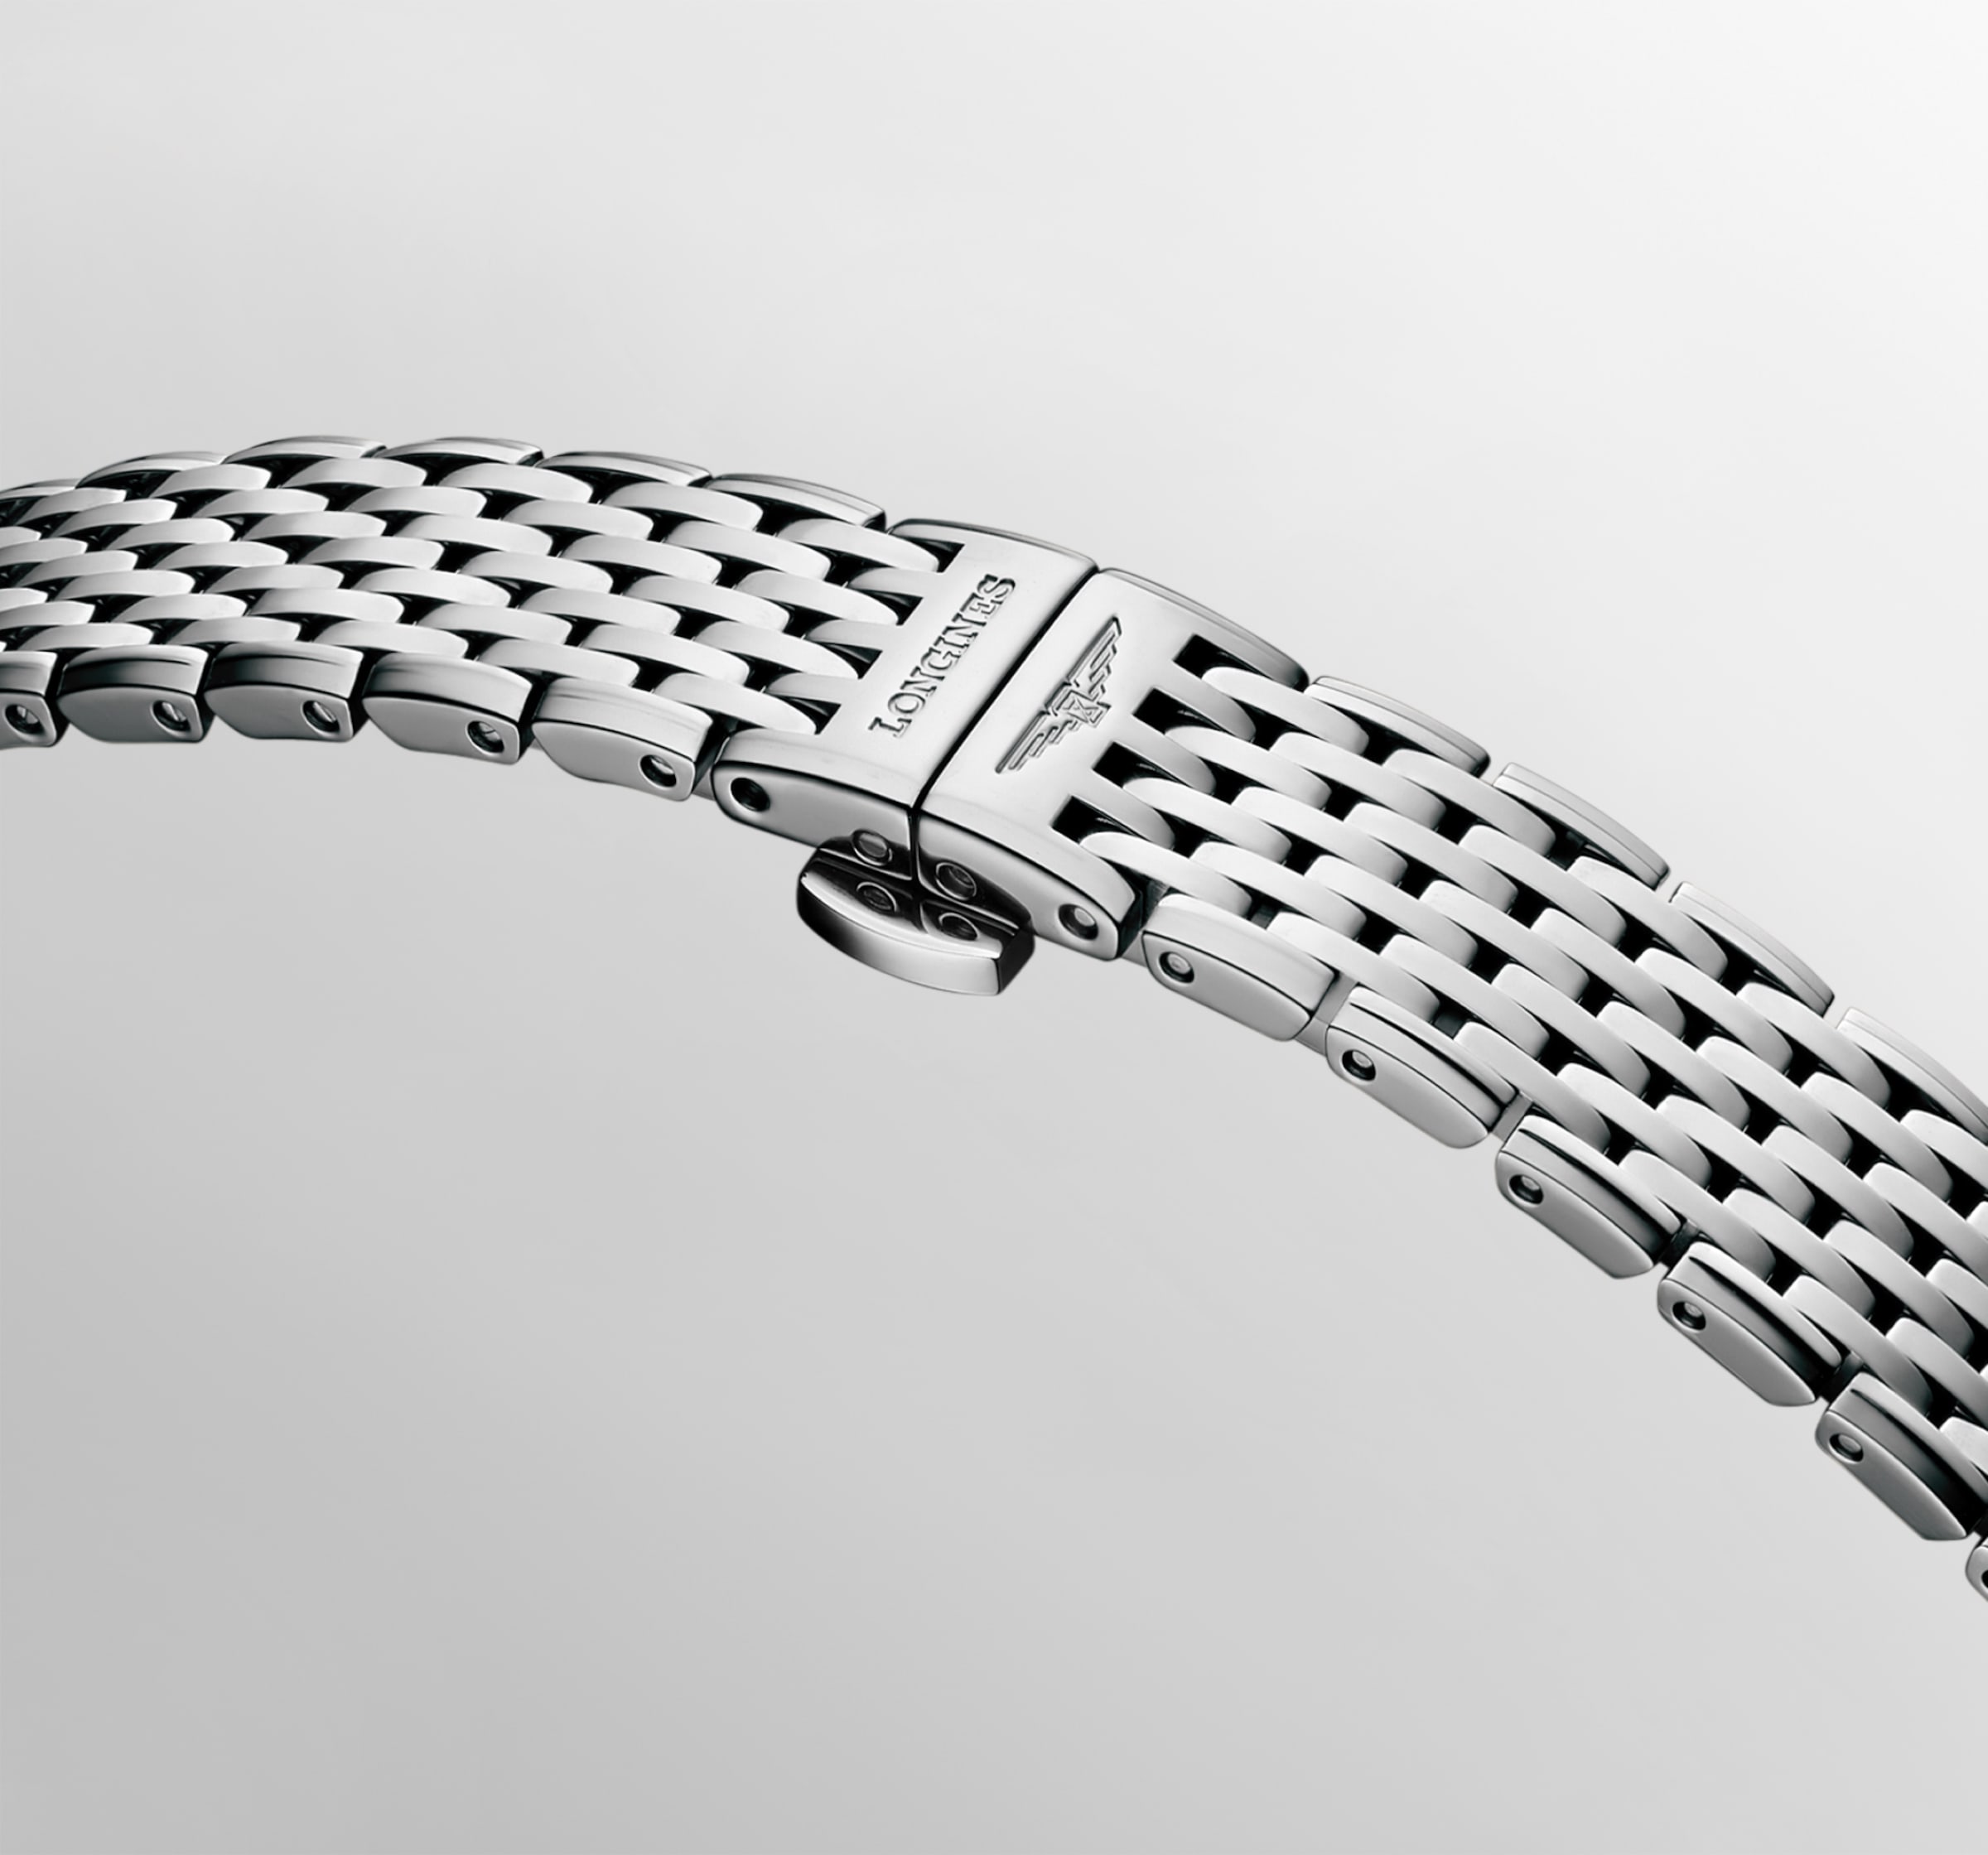 Longines LA GRANDE CLASSIQUE DE LONGINES Quartz Stainless steel Watch - L4.341.0.11.6